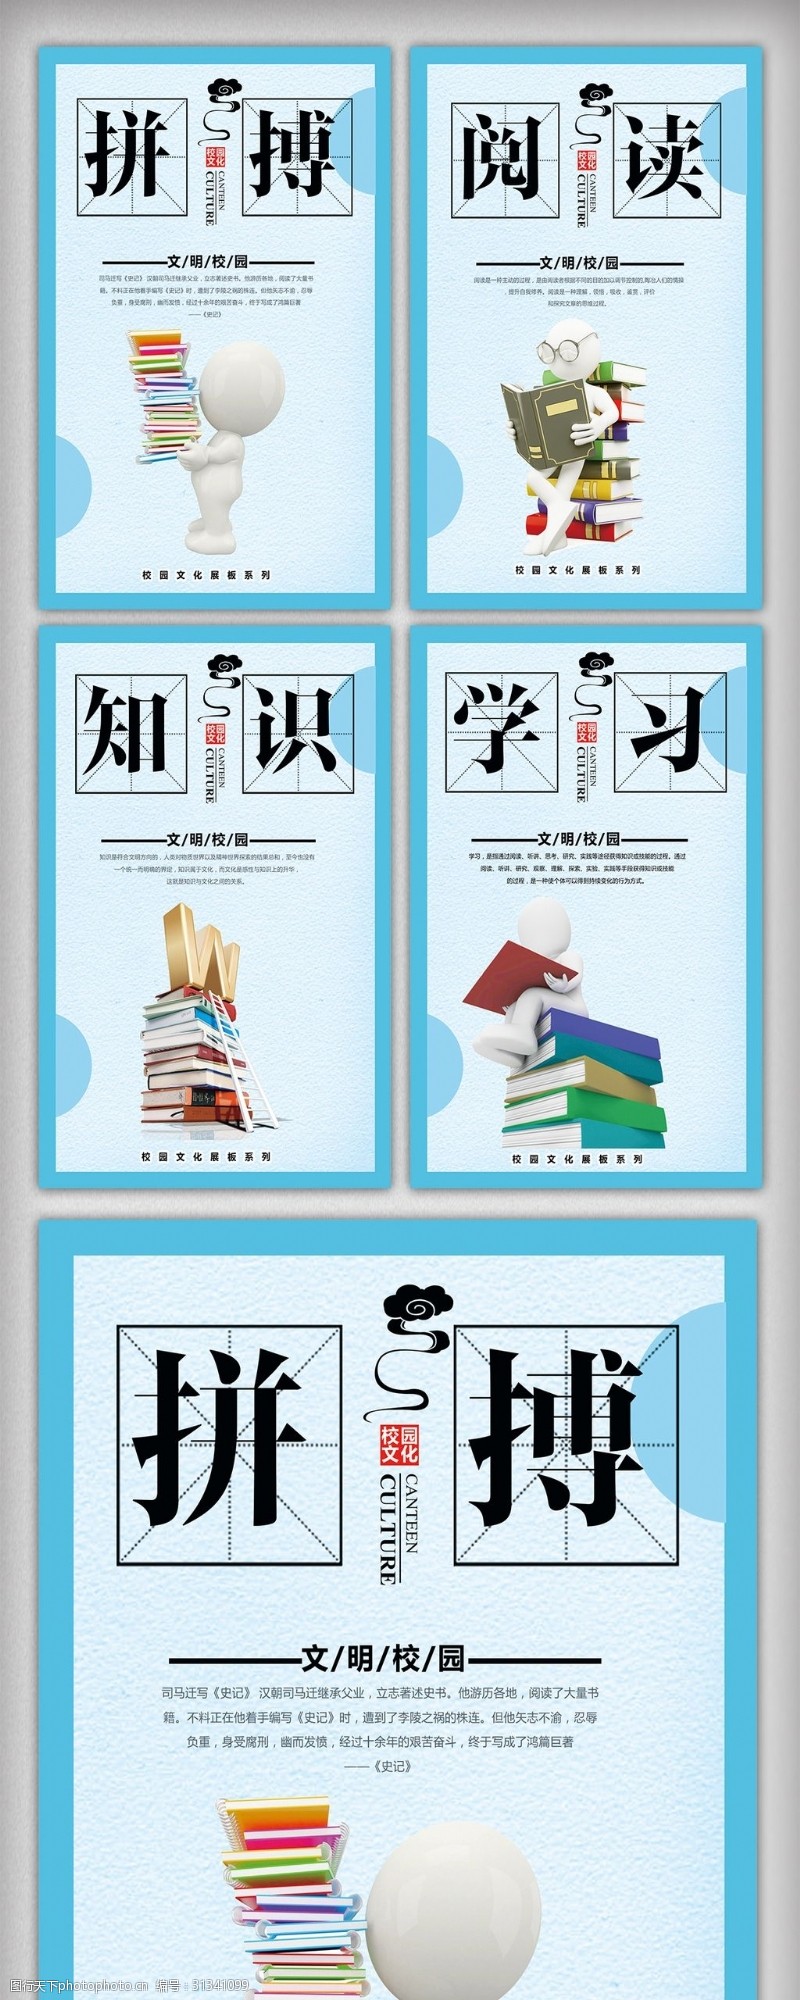 中国风校园文化礼仪文化宣传挂画设计模板图片